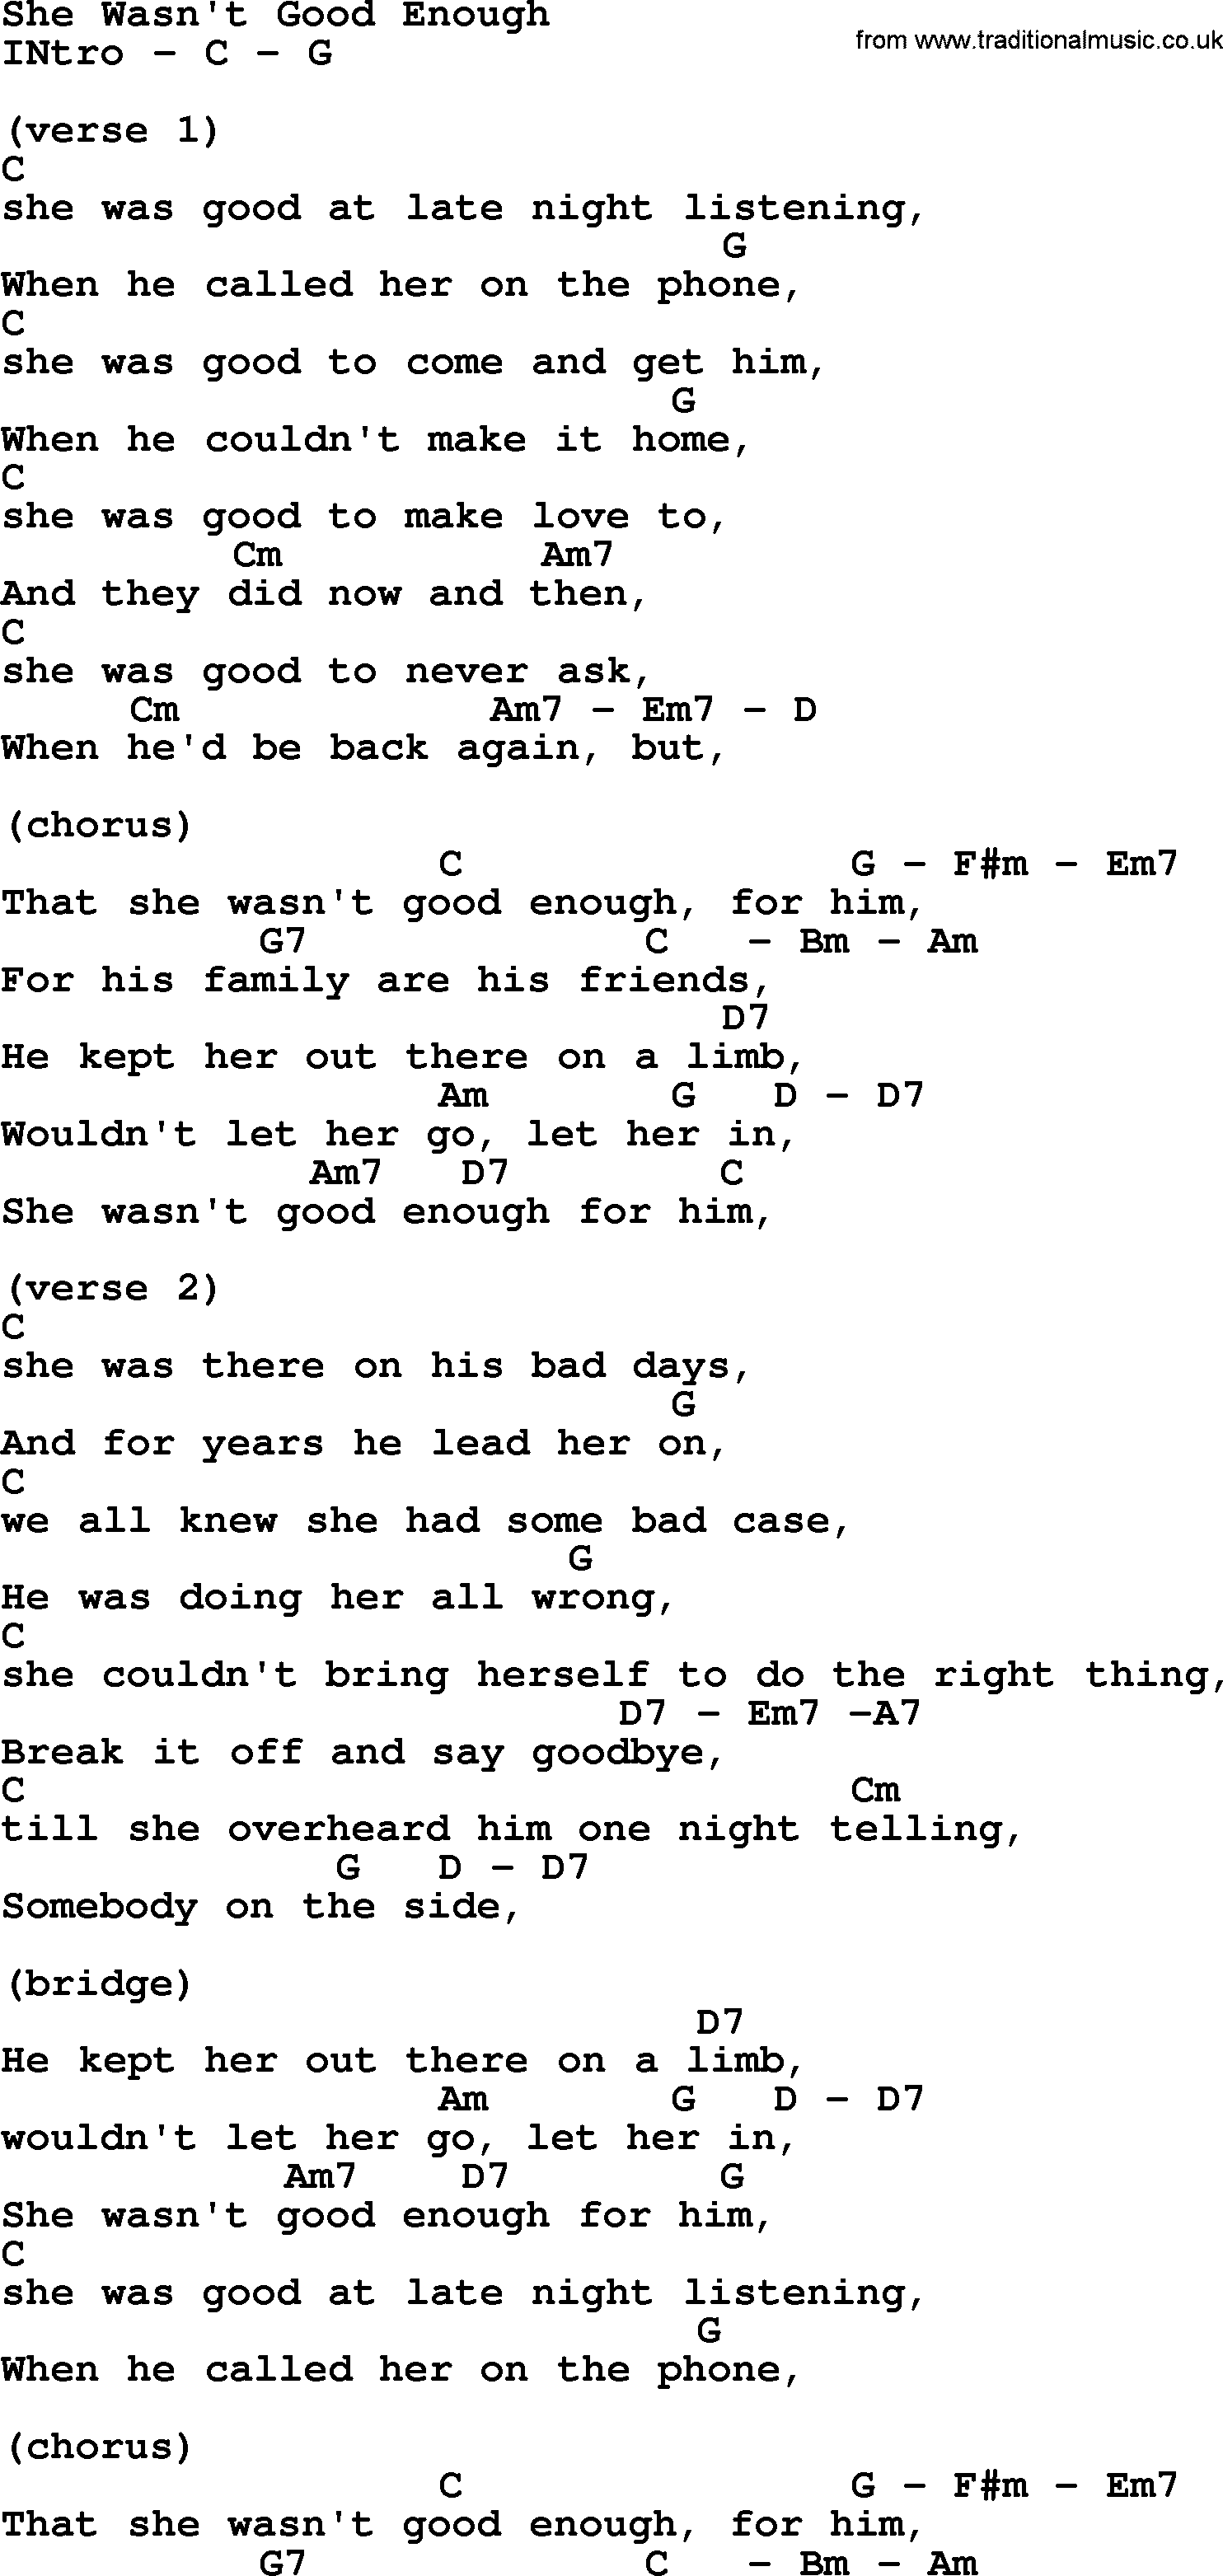 Reba McEntire song: She Wasn't Good Enough, lyrics and chords